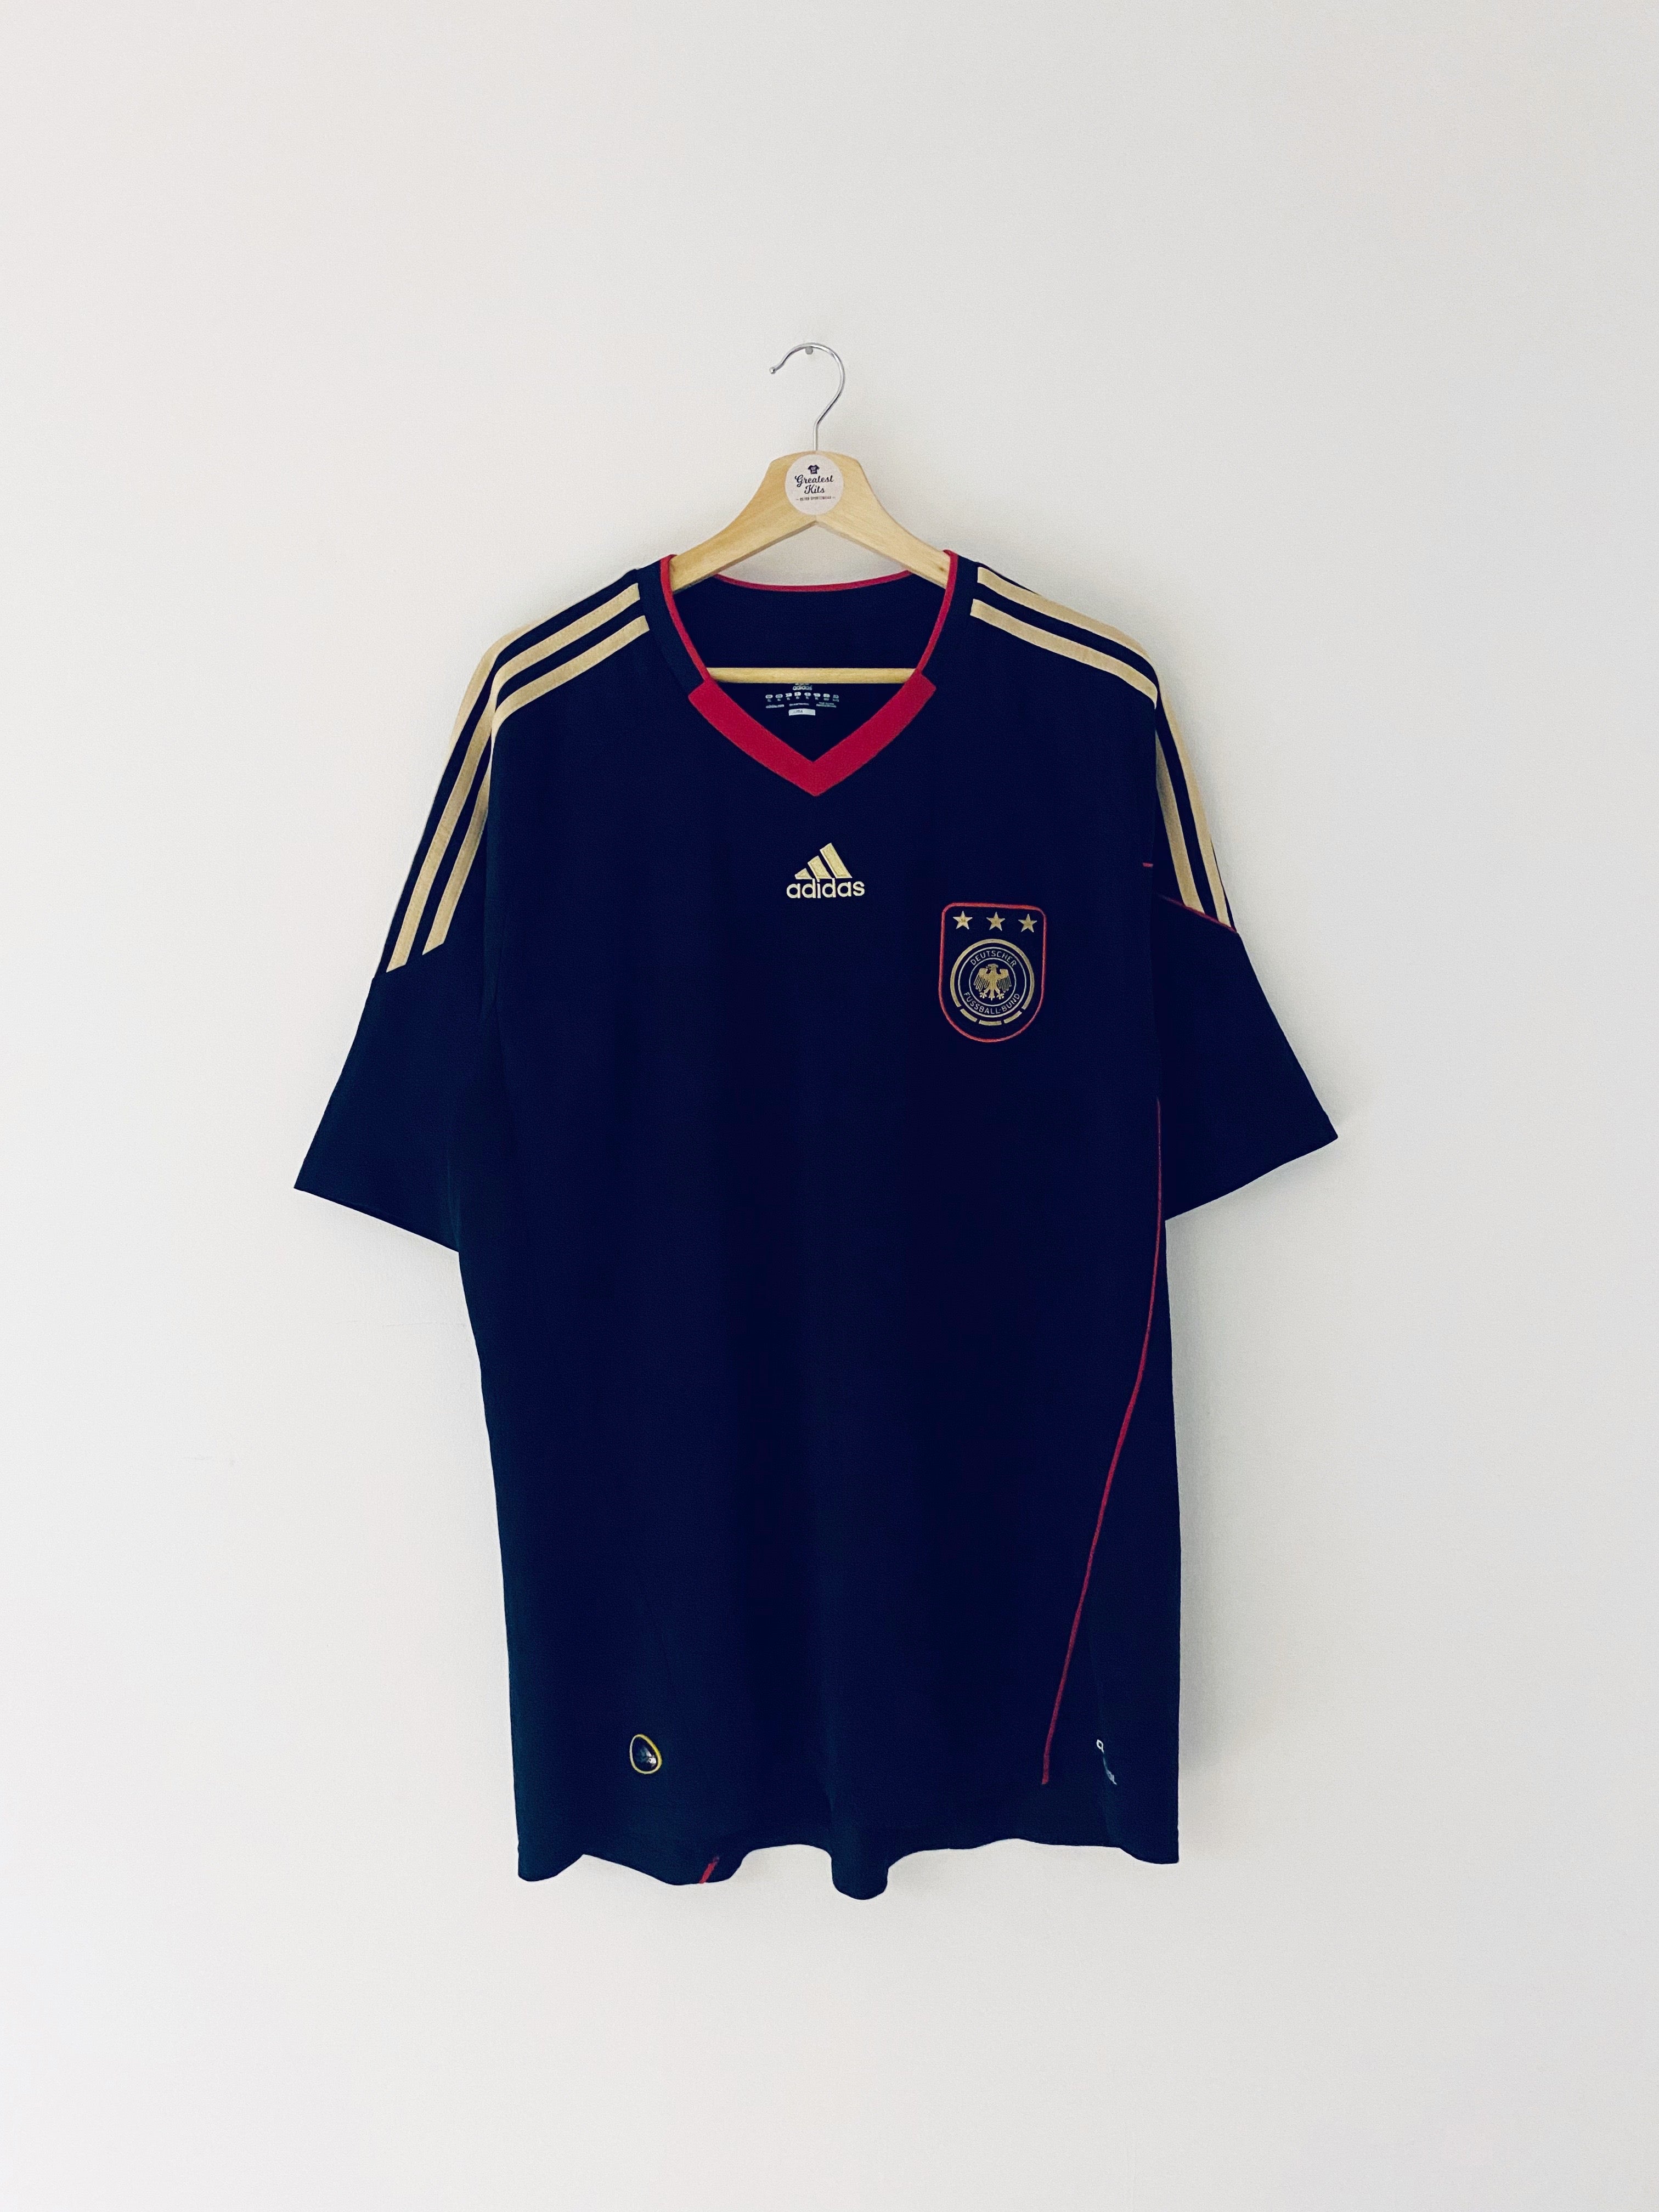 2010/11 Germany Away Shirt (XL) 9/10